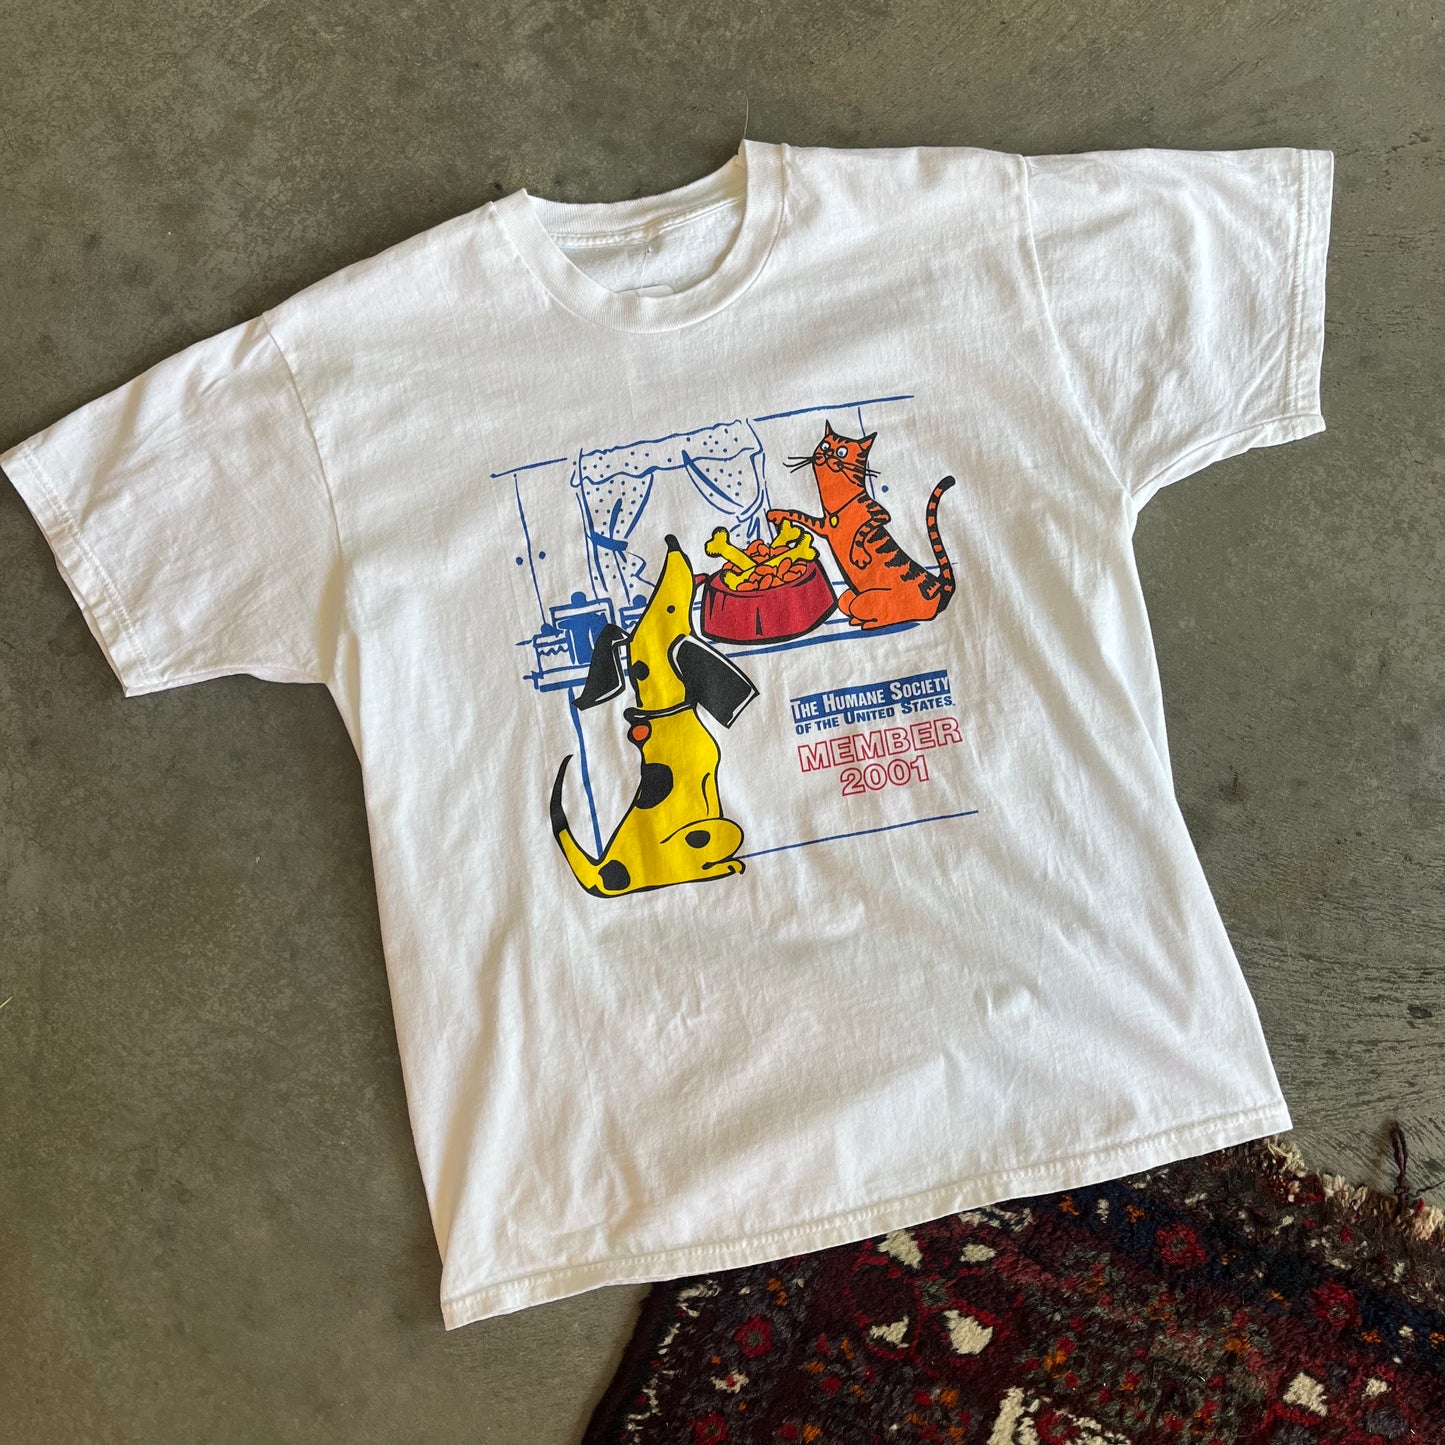 2001 Humane Society Shirt - M